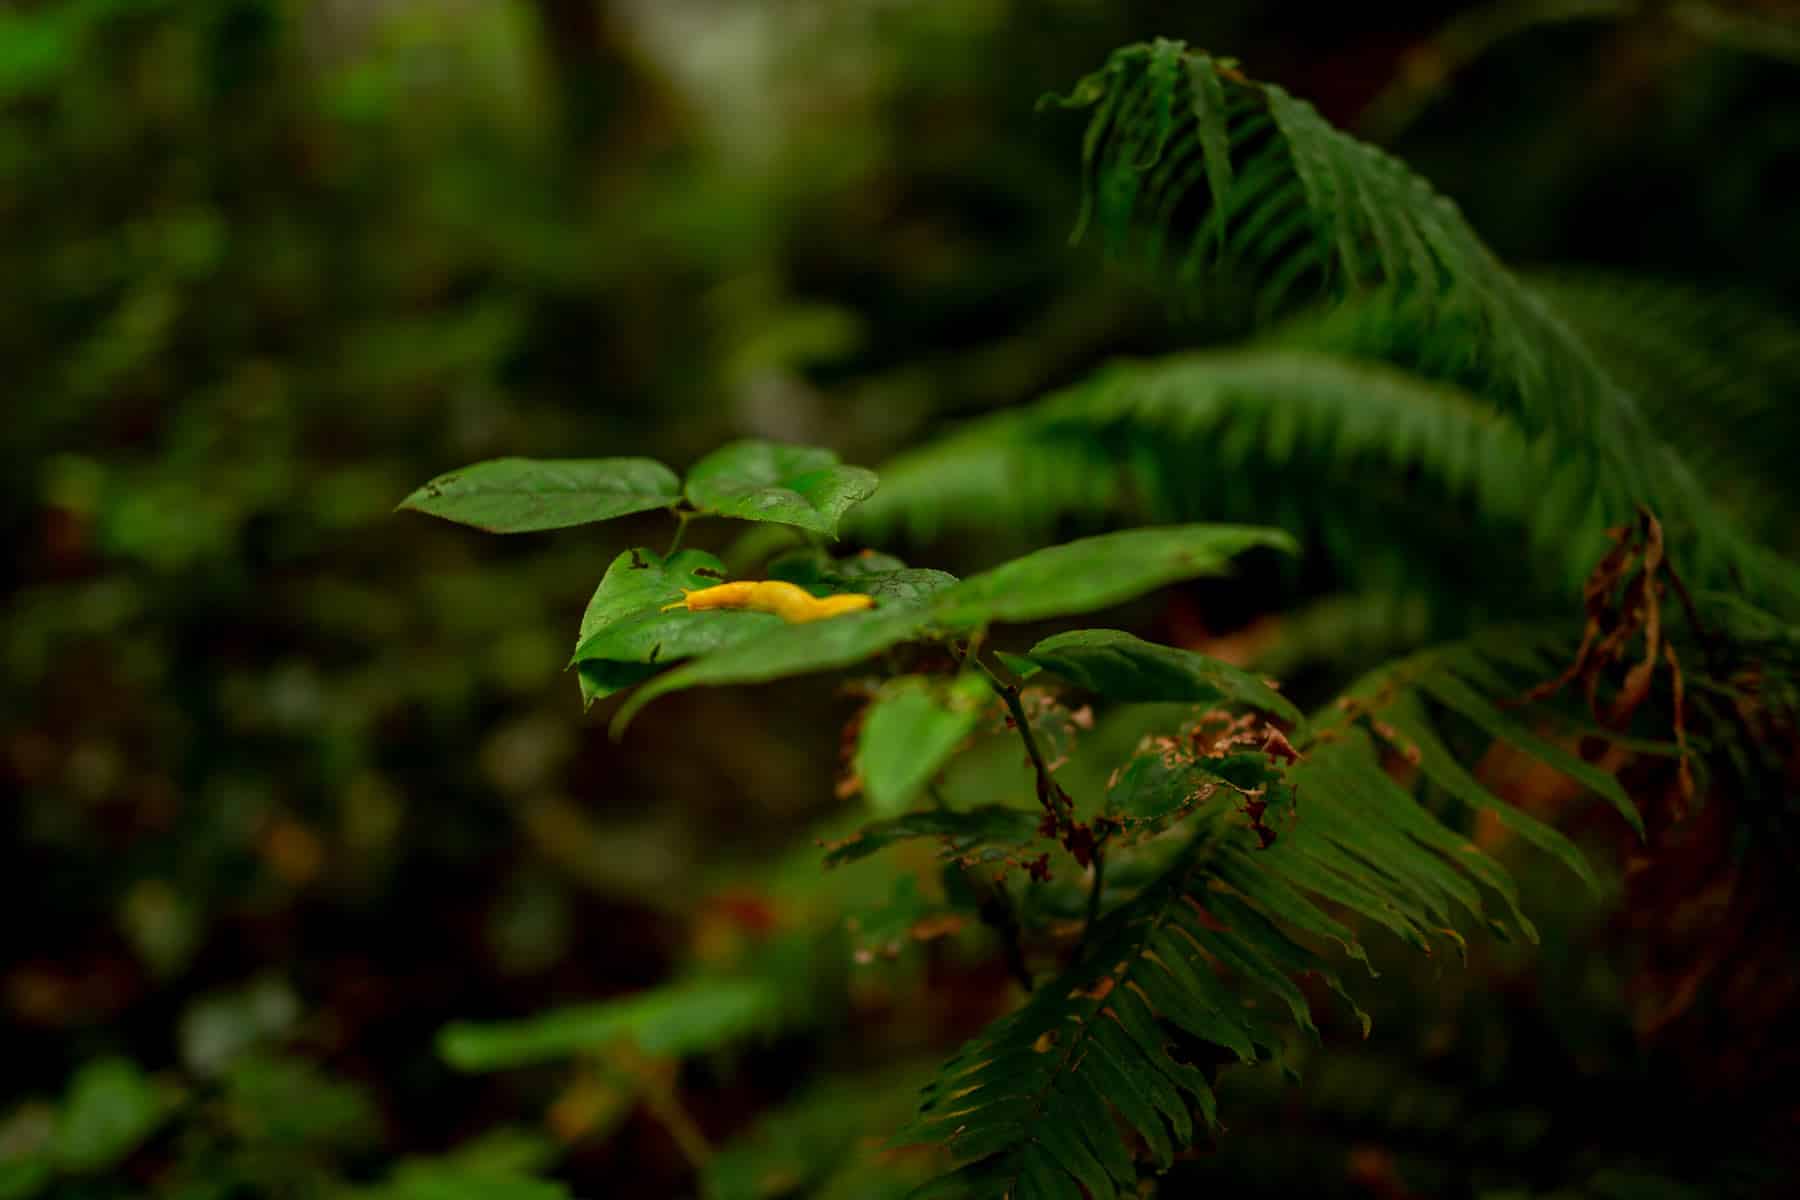 banana slug redwood national park